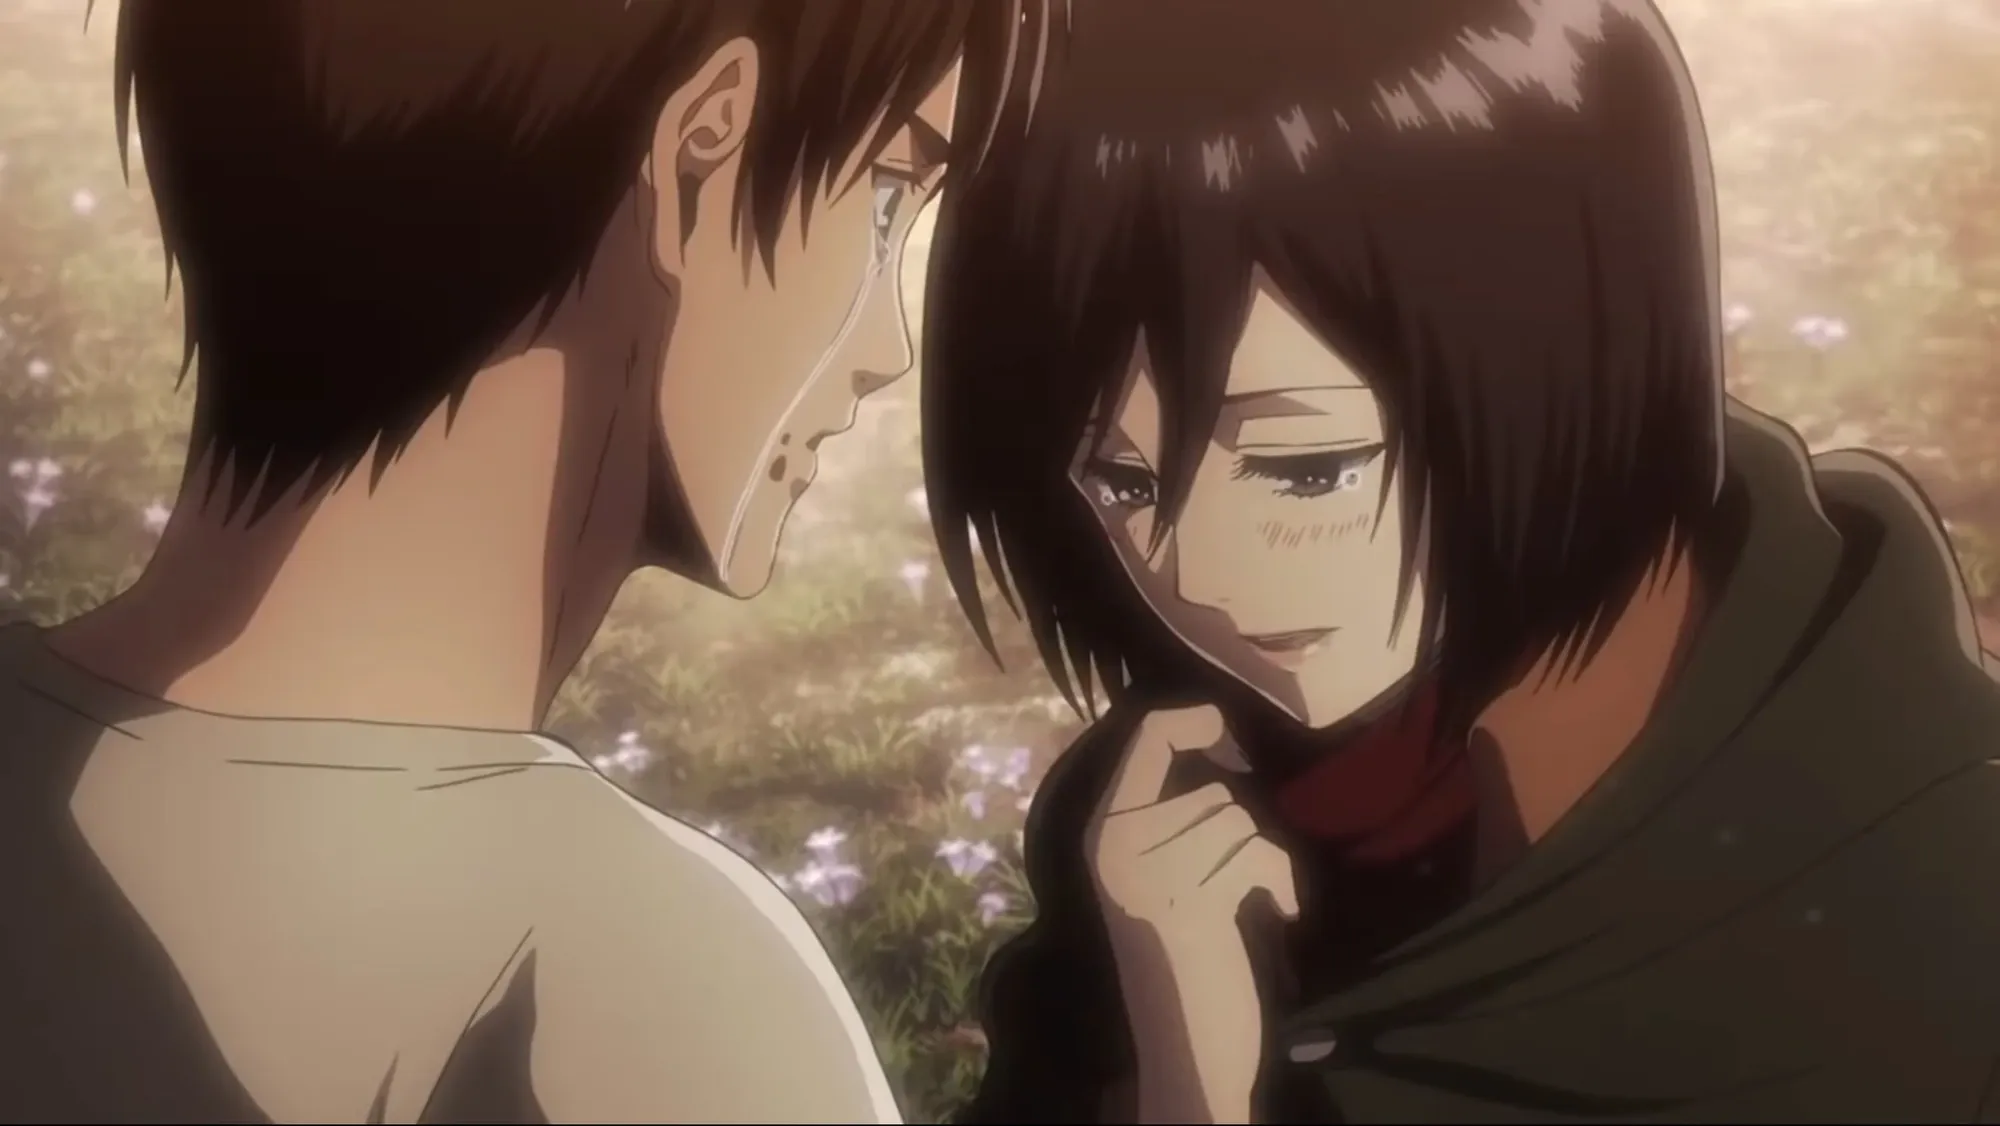 Ataque a Titan: ¿Cuál es el trato con la relación de Eren y Mikasa?